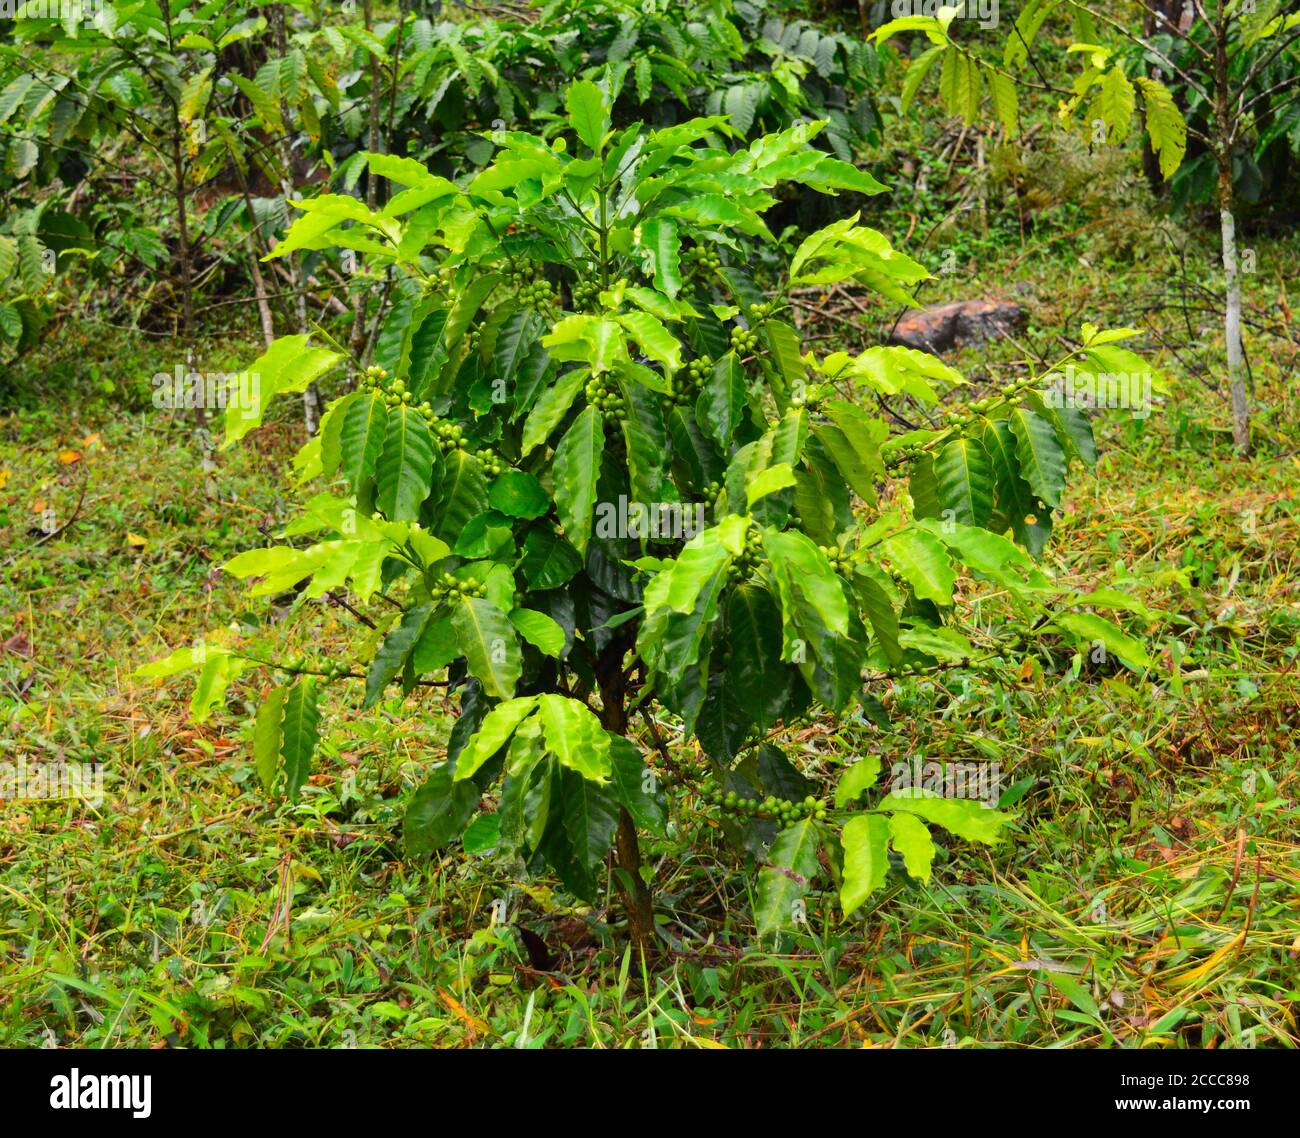 l'image montre une plante de café avec des baies le jour de la pluie. Banque D'Images